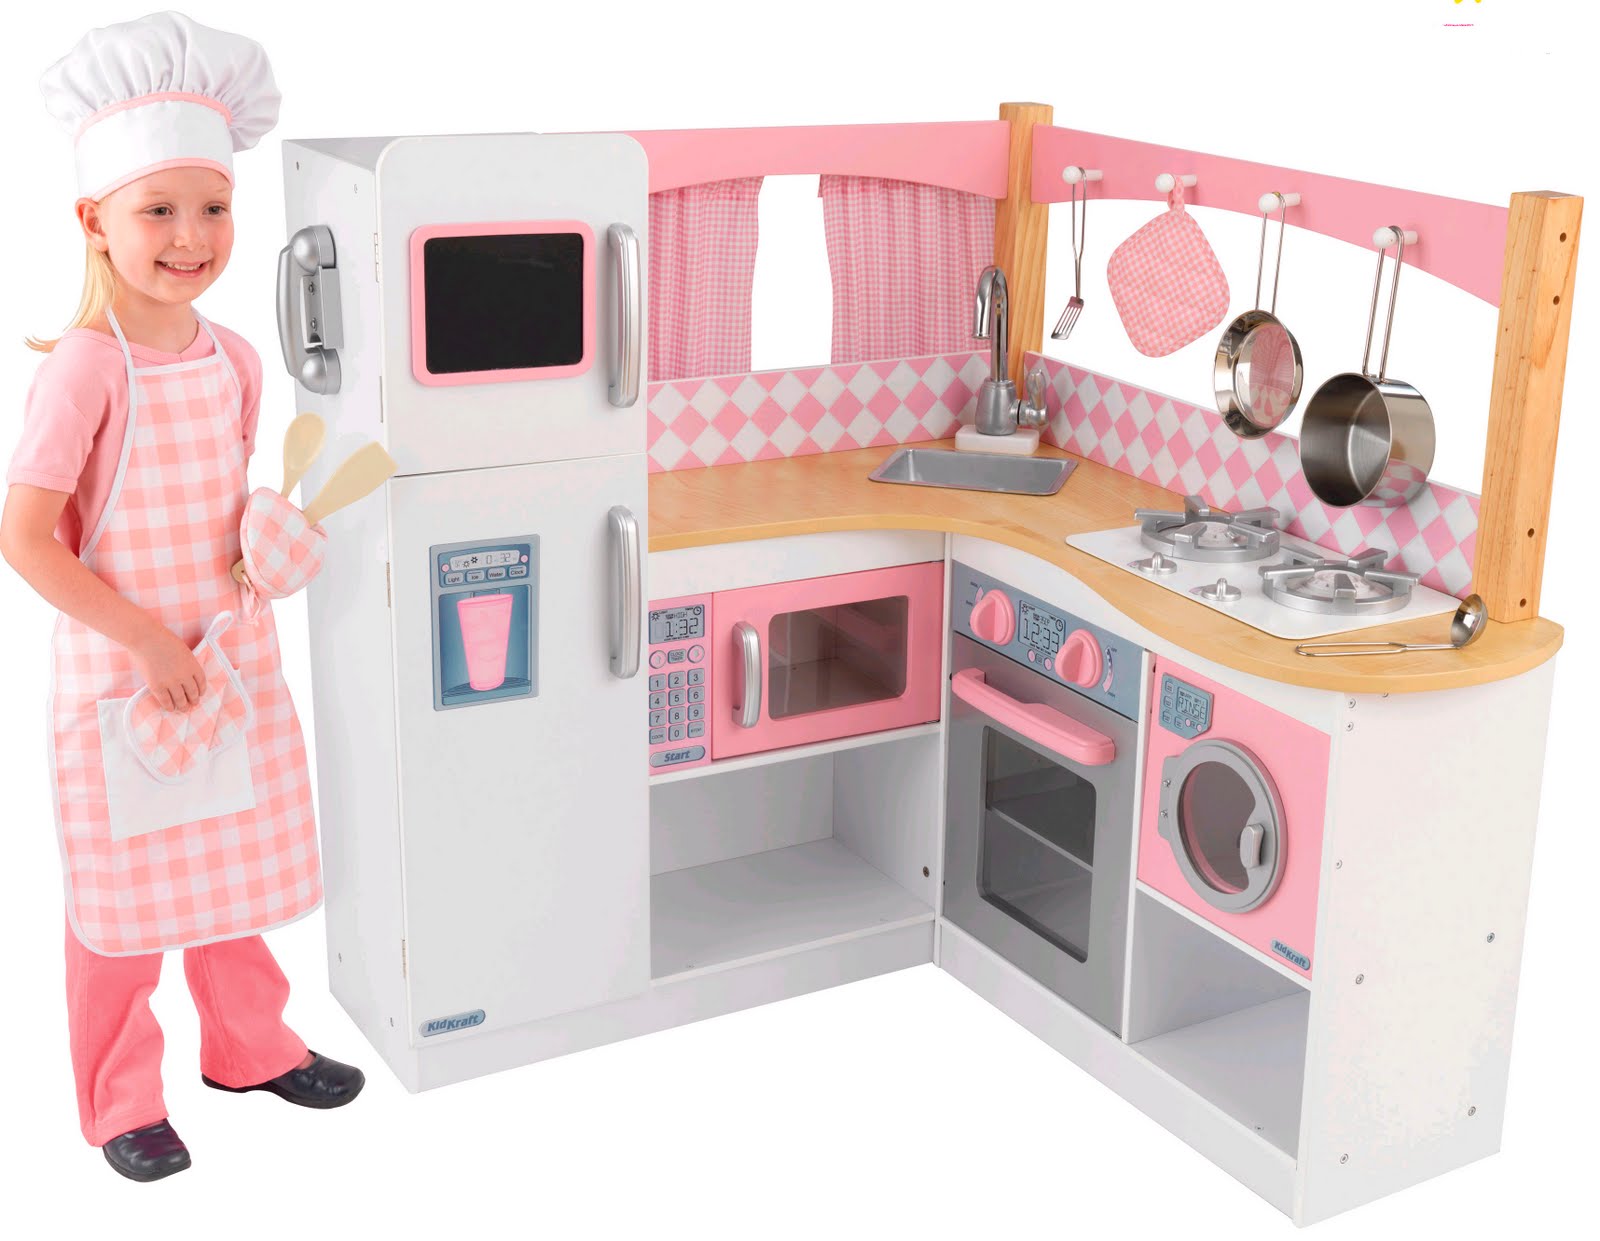 Children's Wooden Toys Toy Play Kitchen Furniture 